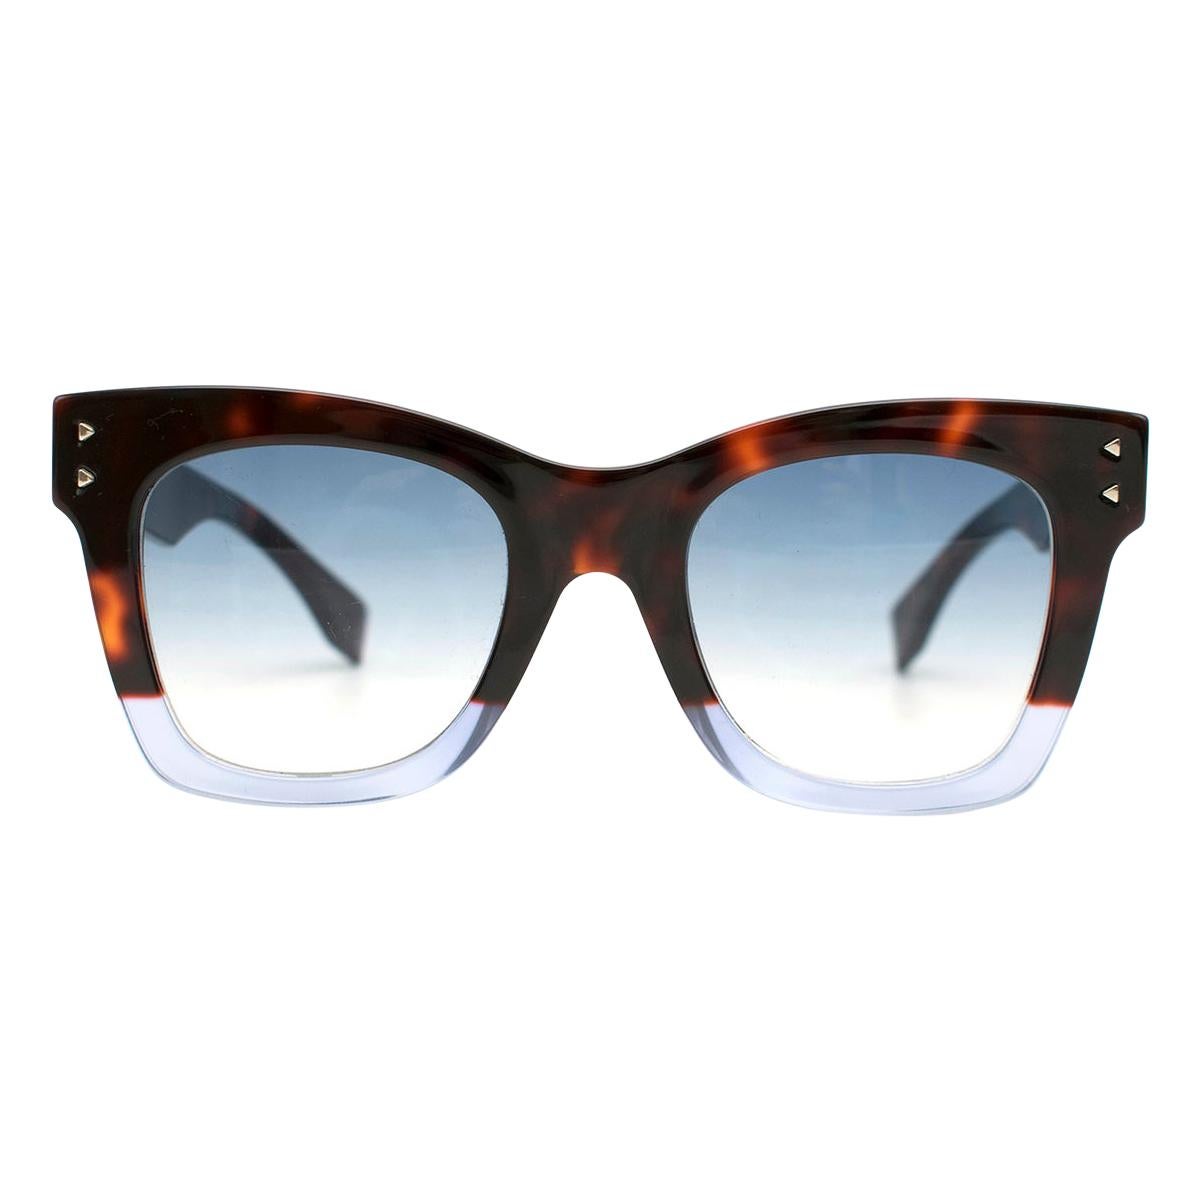 Fendi FF 0237 IPR Square Tortoiseshell Sunglasses 